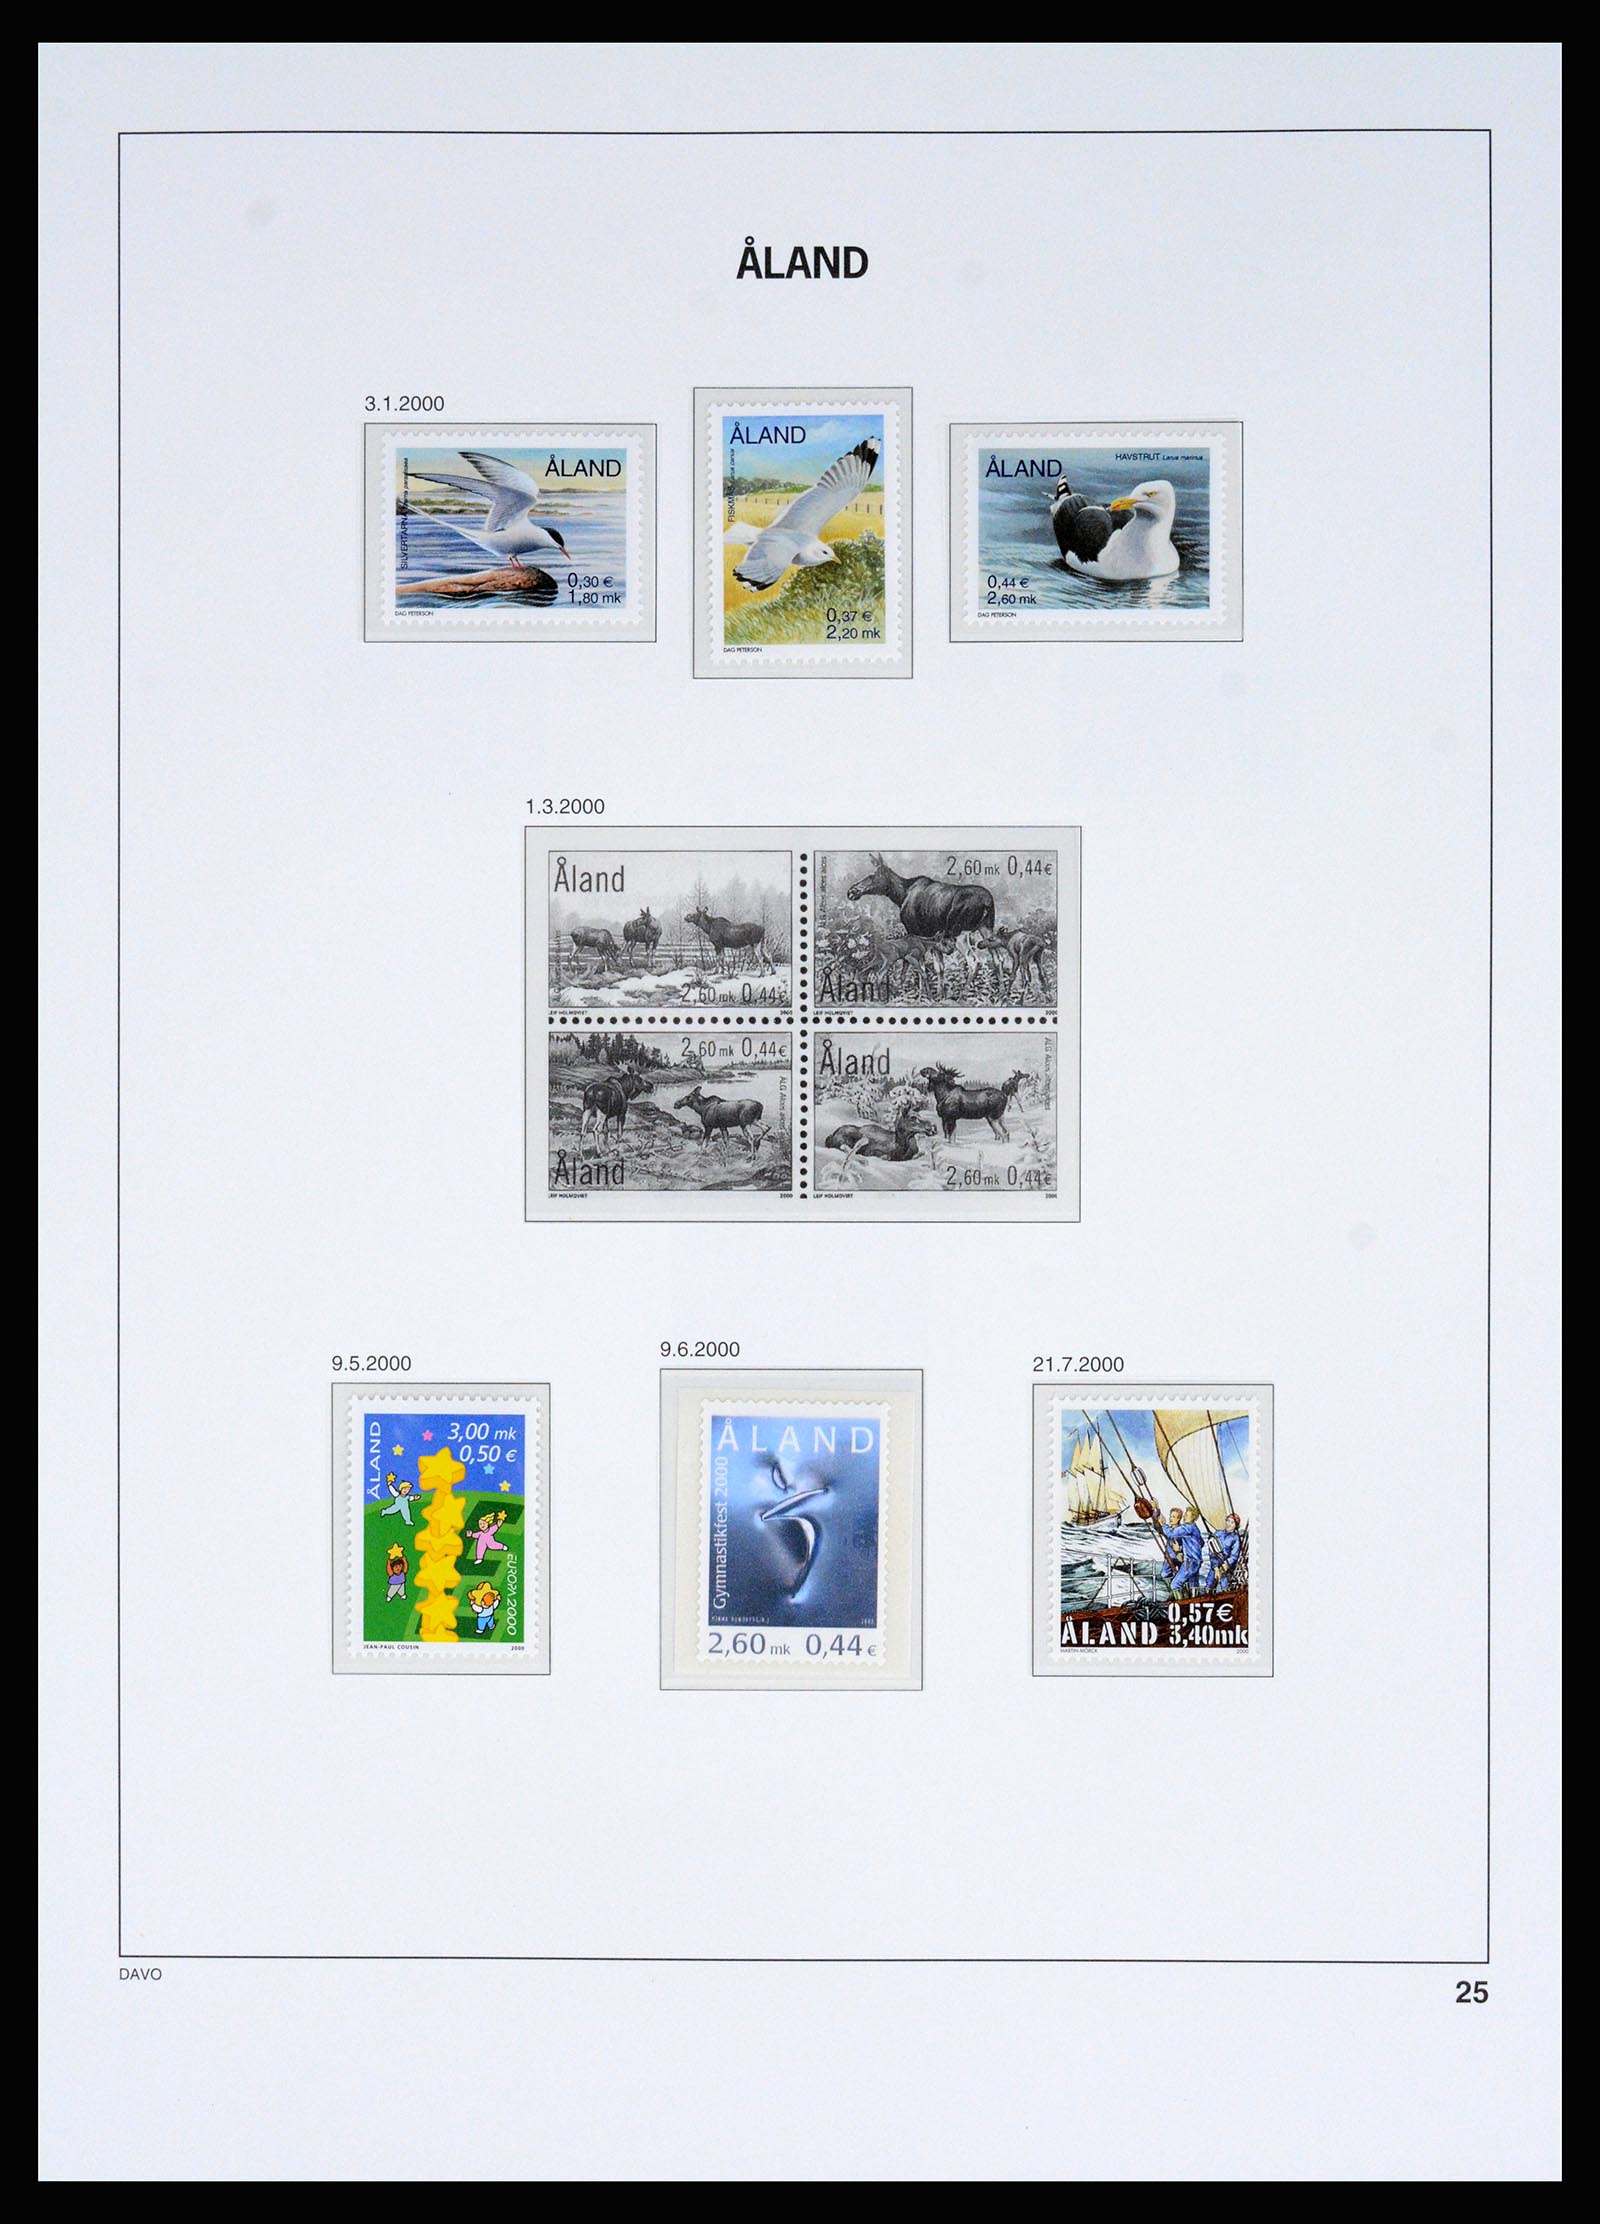 37184 019 - Postzegelverzameling 37184 Aland 1990-2018.